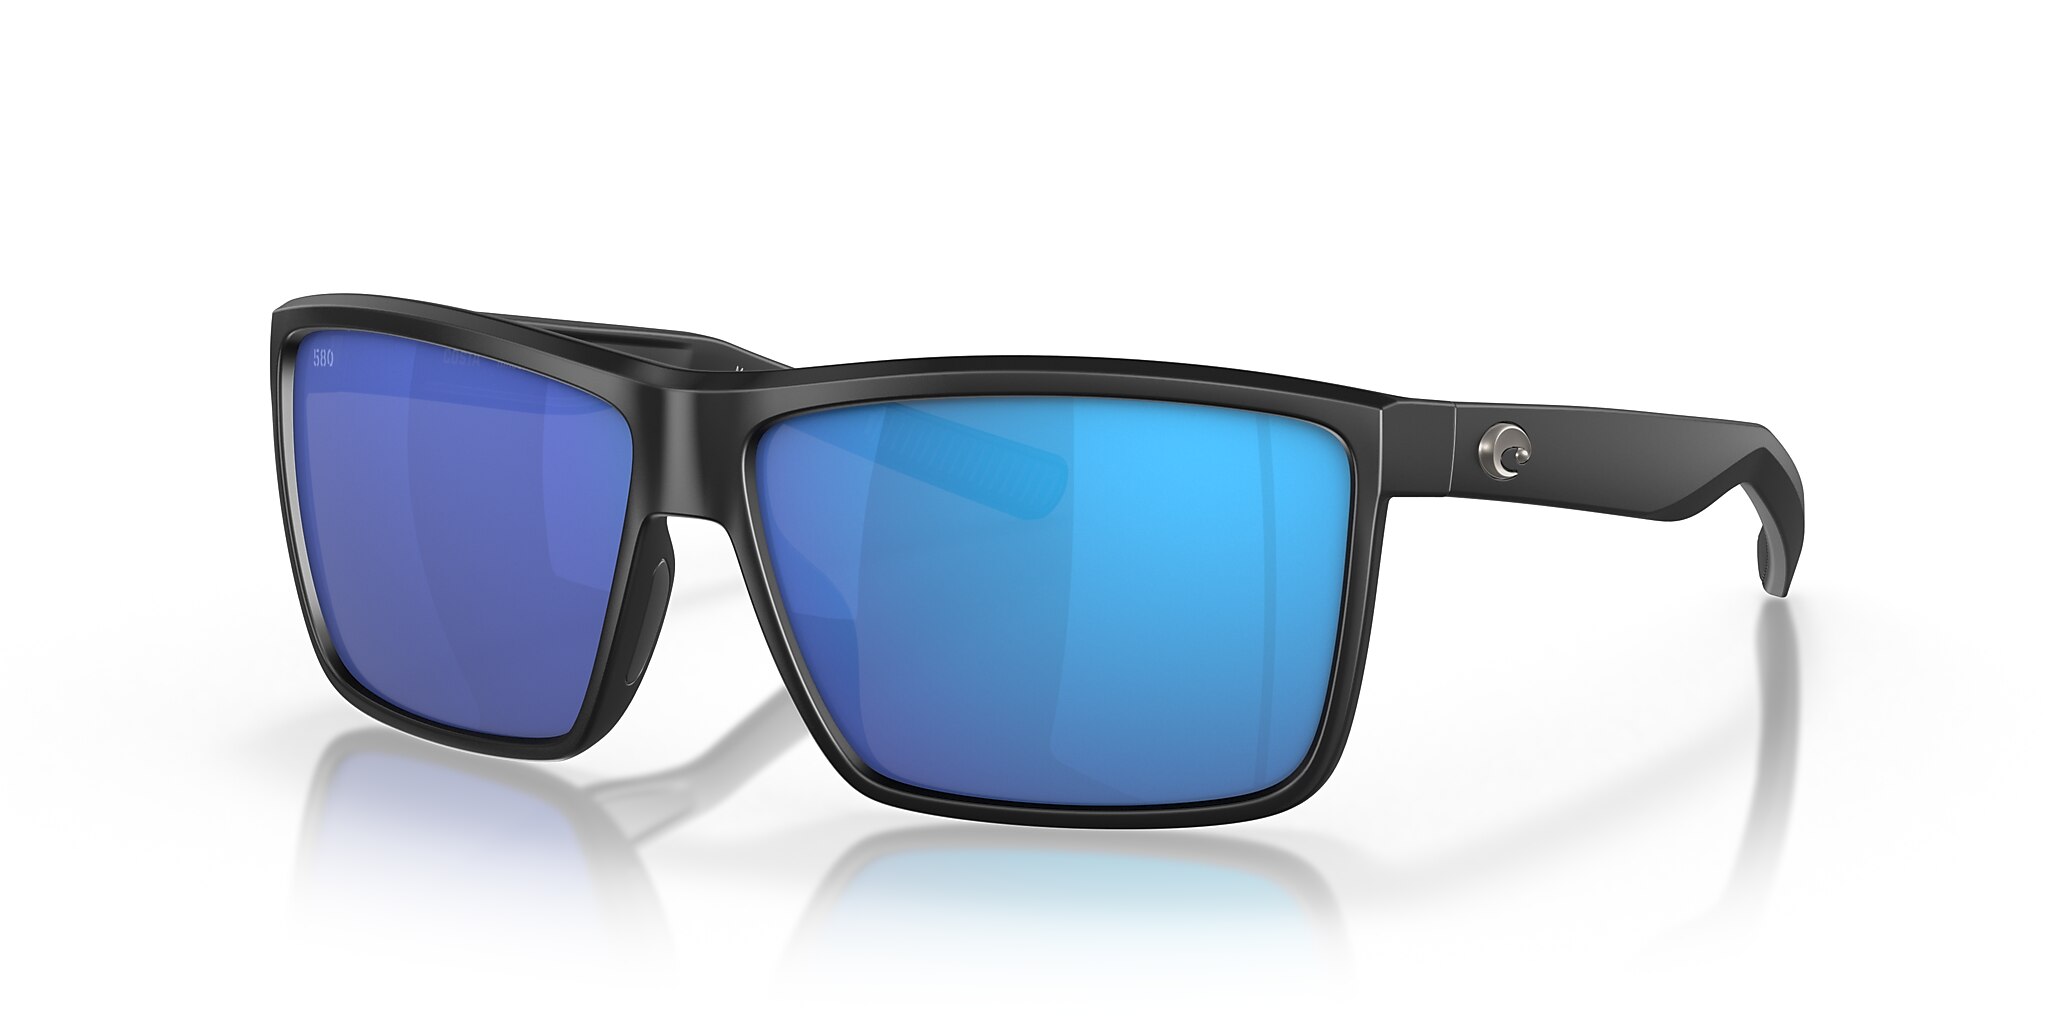 Rinconcito Polarized Sunglasses in Blue Mirror | Costa Del Mar®